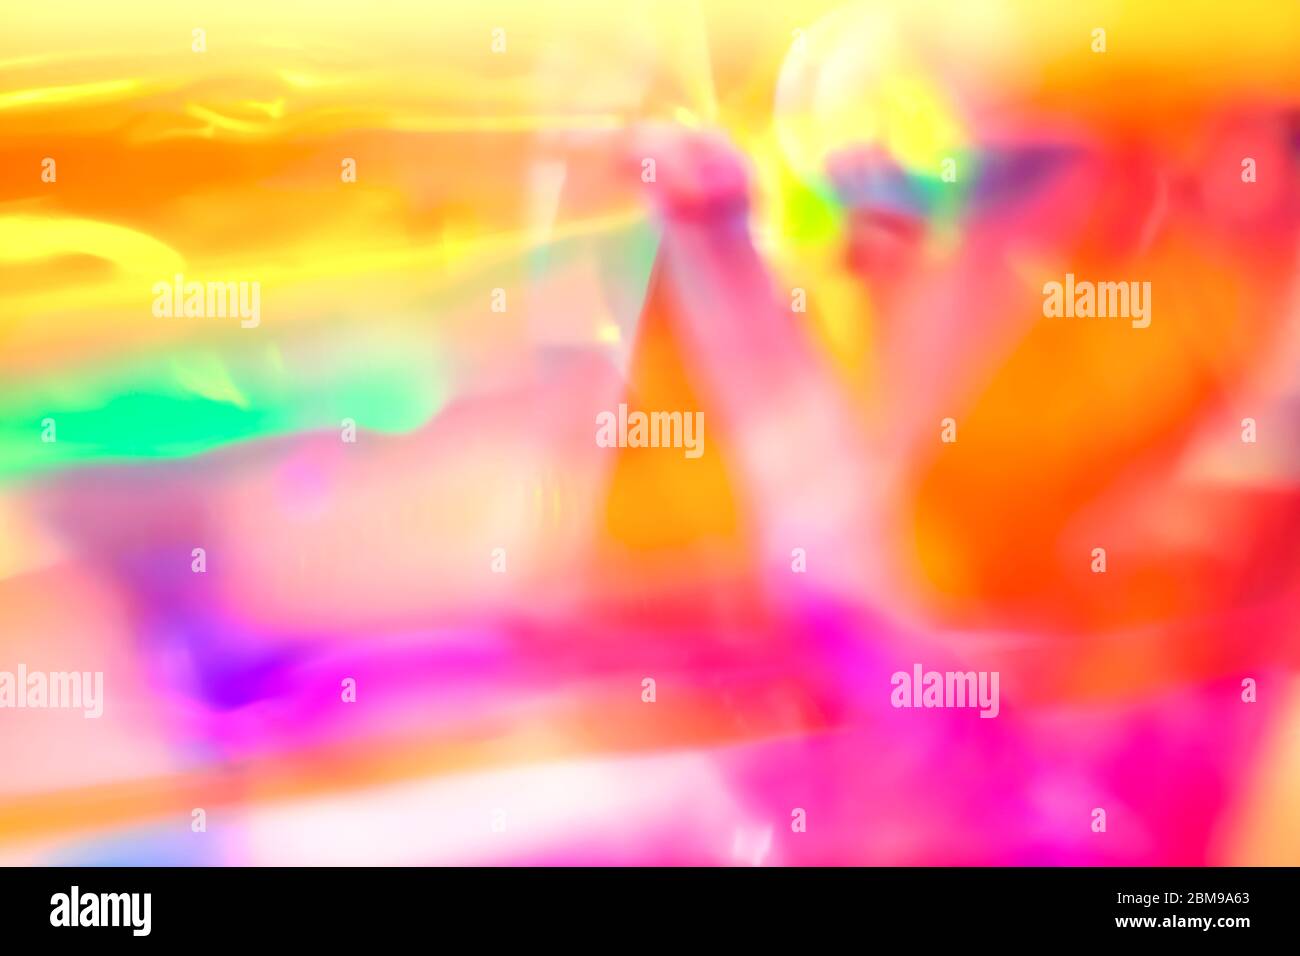 Résumé Happy Retro 90 pop psychédélique fond de fête avec des couleurs vives et saturées de néon arc-en-ciel Banque D'Images